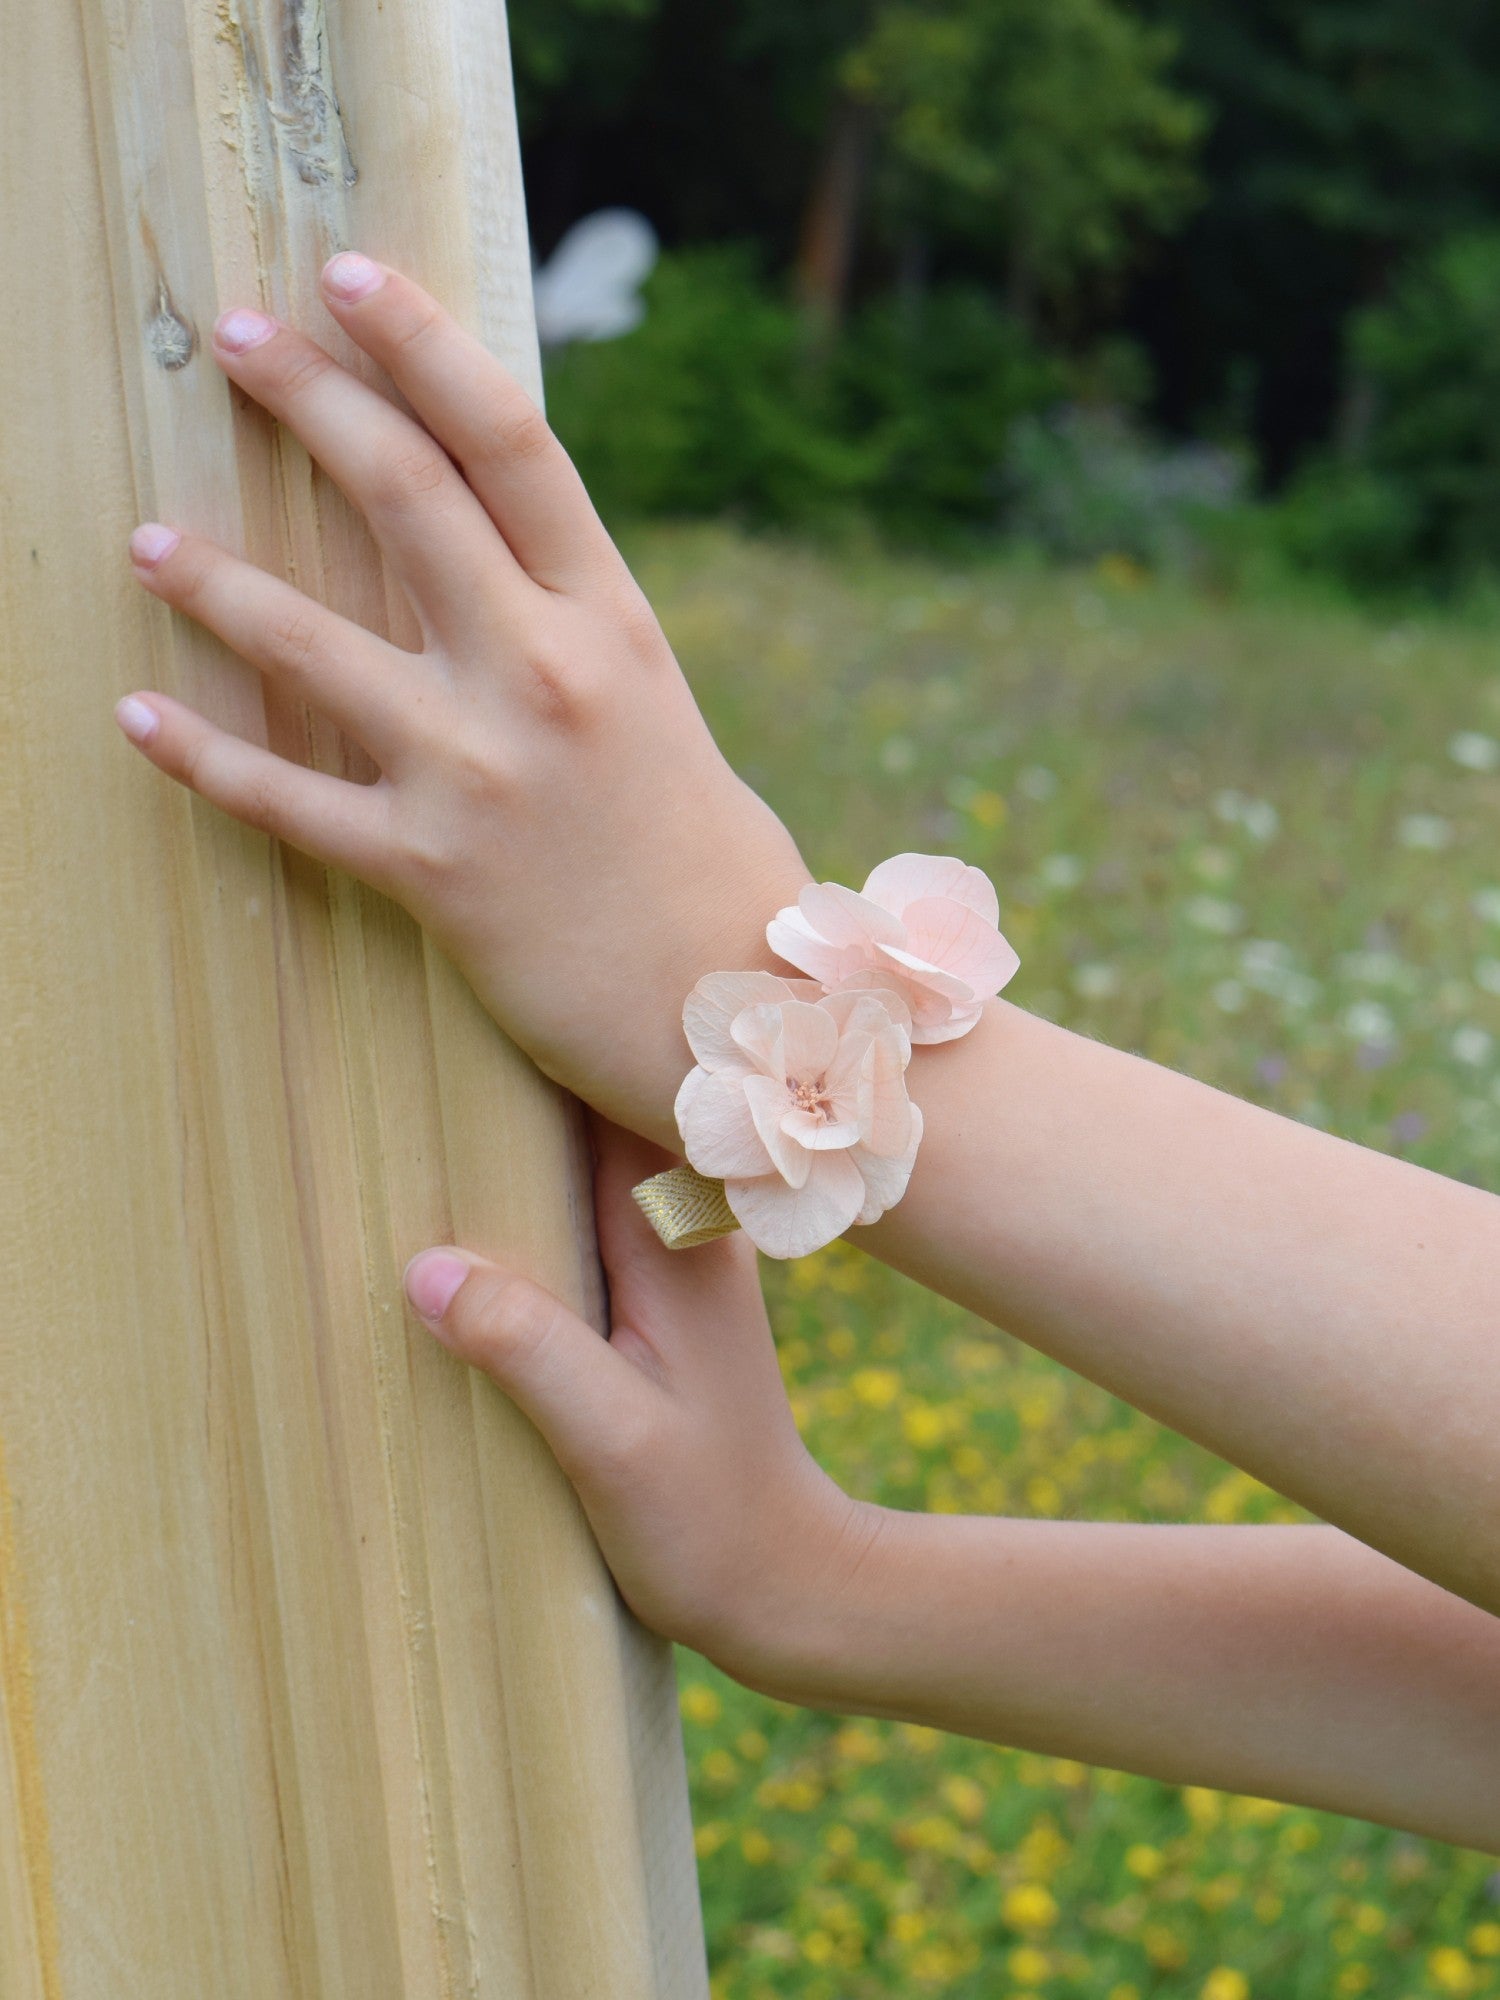 Kinderhand met een armband die met de hand werd gemaakt van droogbloemen en volledig bestaat uit zachtroze hortensiablaadjes